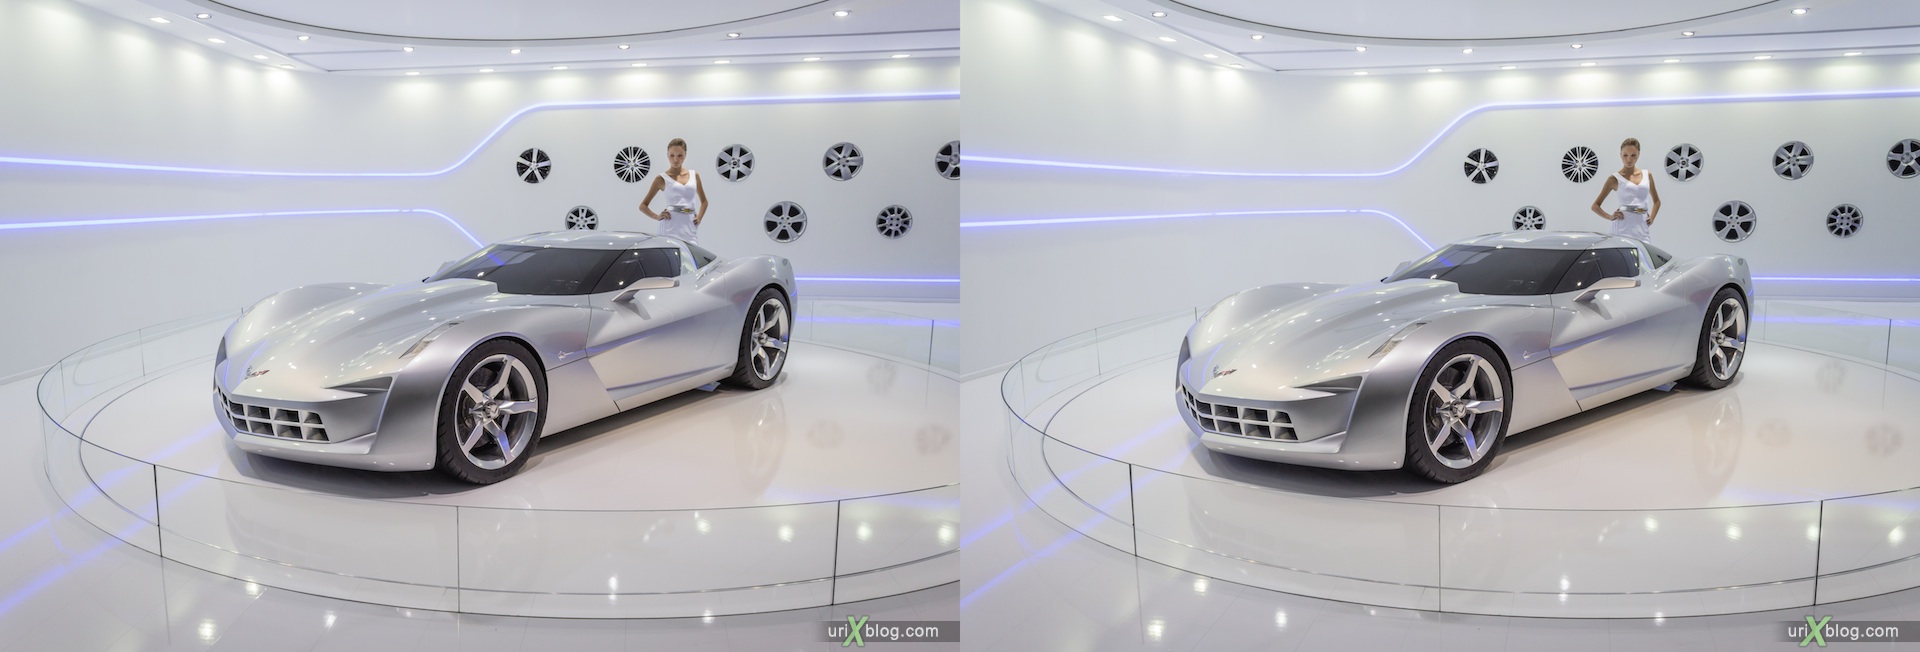 2012, Corvette Stingray, девушка, модель, Московский международный автомобильный салон, ММАС, Крокус Экспо, 3D, стерео, стереопара